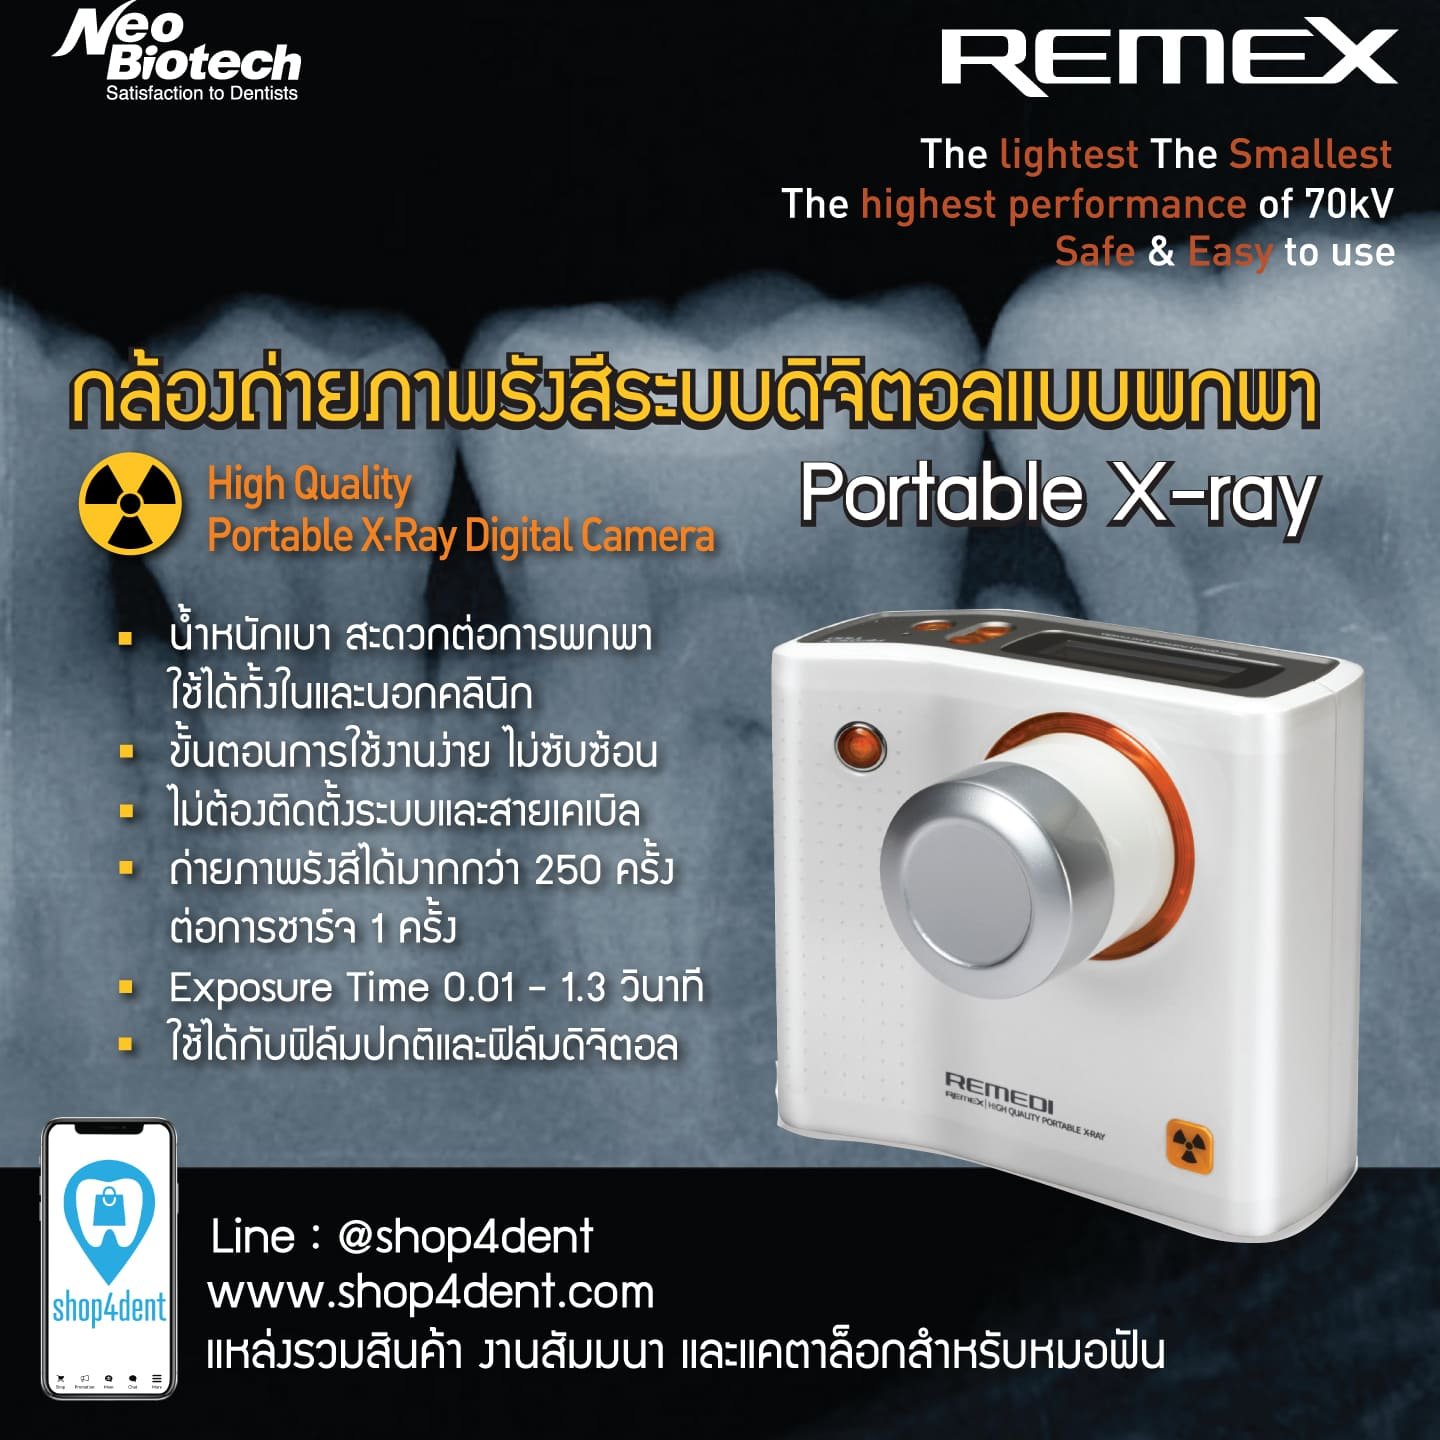 Neobiotech REMEX กล้องถ่ายภาพรังสีระบบดิจิตอลแบบพกพา